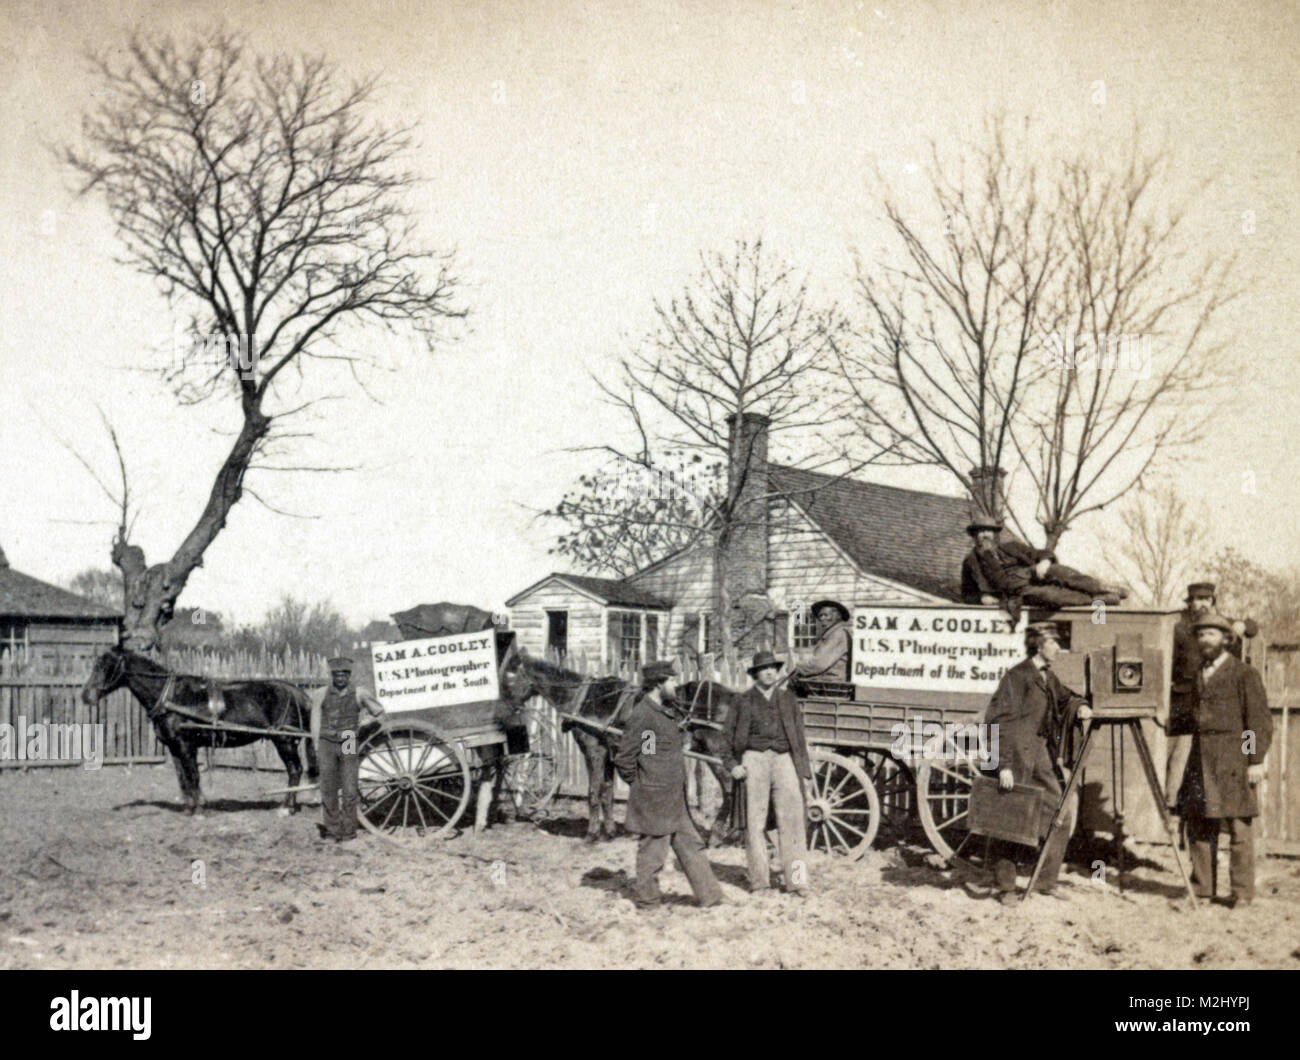 Guerre de Sécession, le sud de l'Unité de photographie, 1860 Banque D'Images